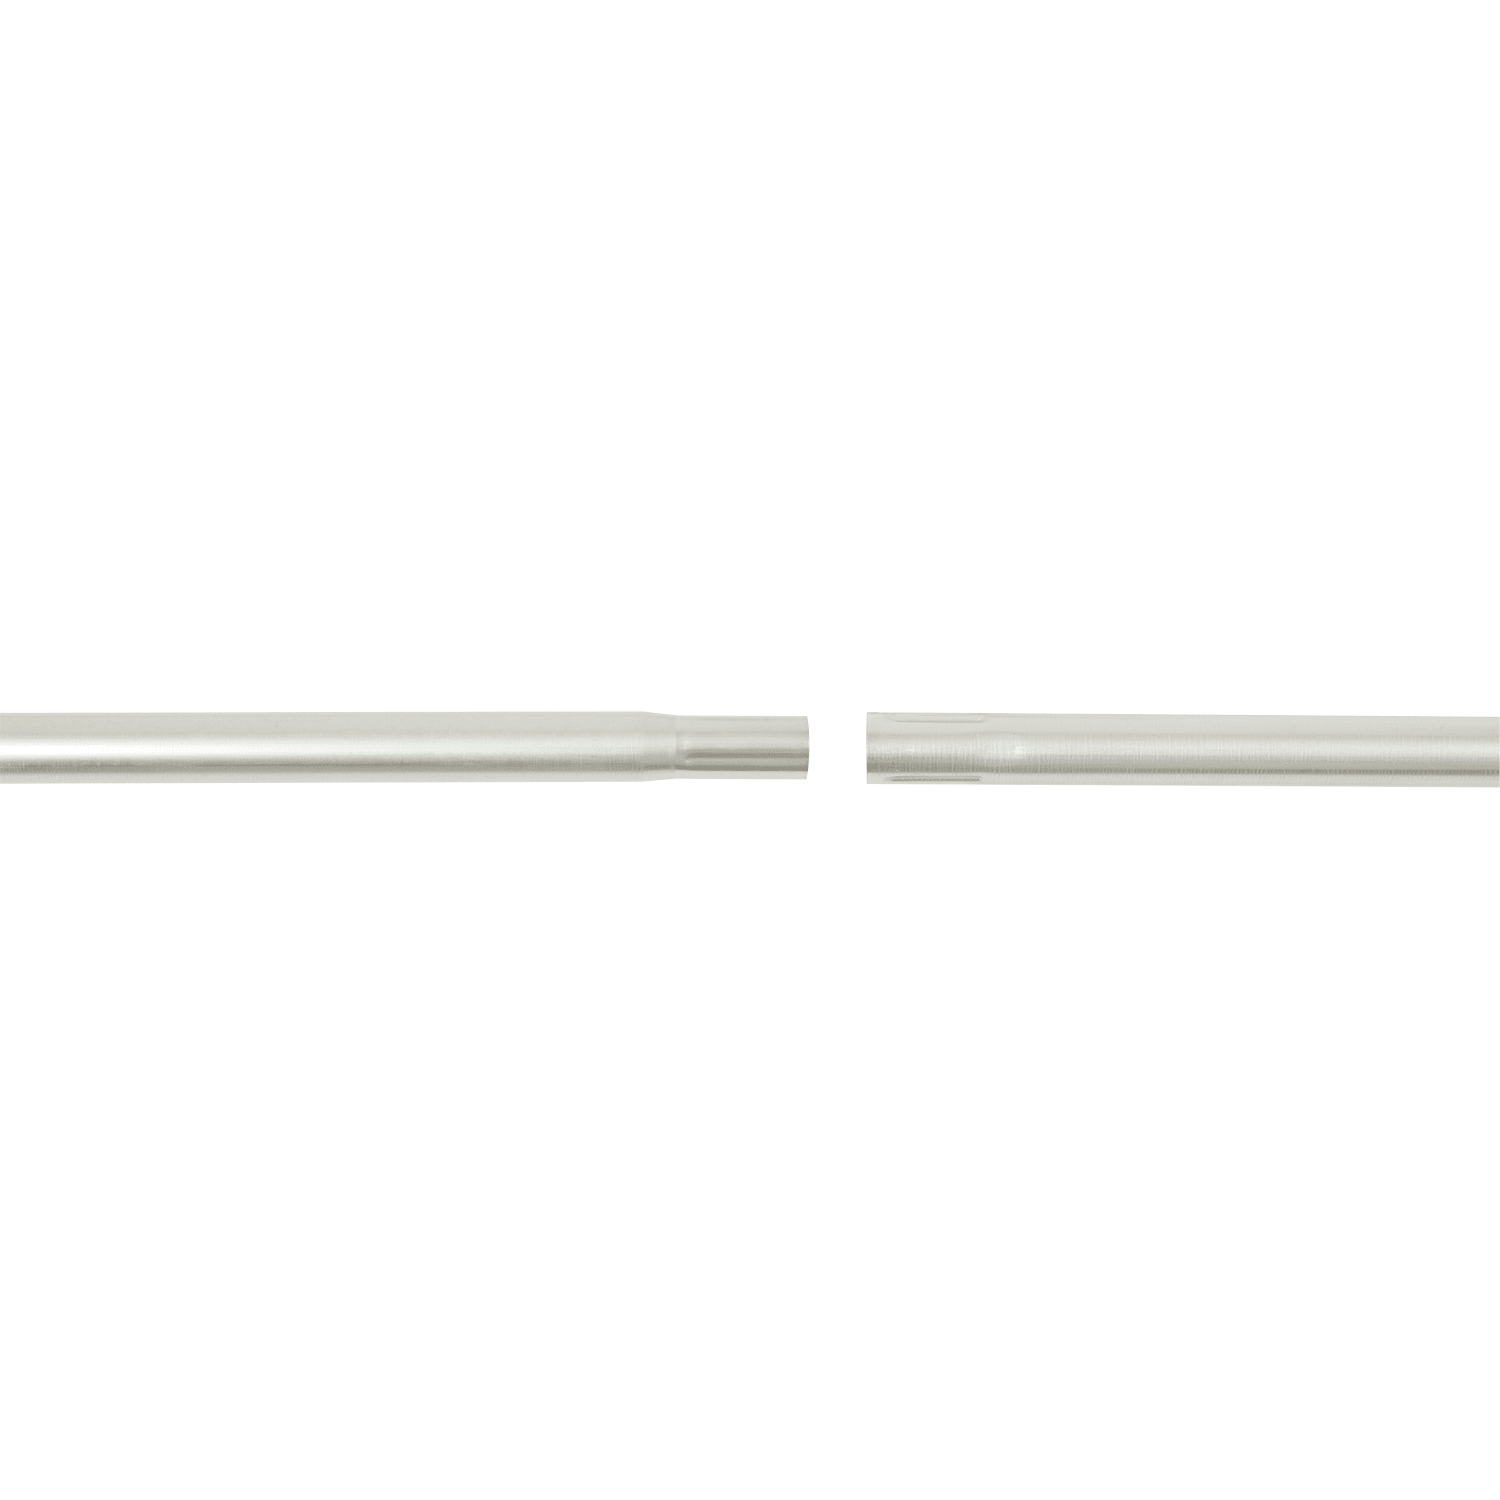 Erard - Tronçon acier emboîtable de 2 mètres Ø 50 mm x 1,5 mm. Galvanisé